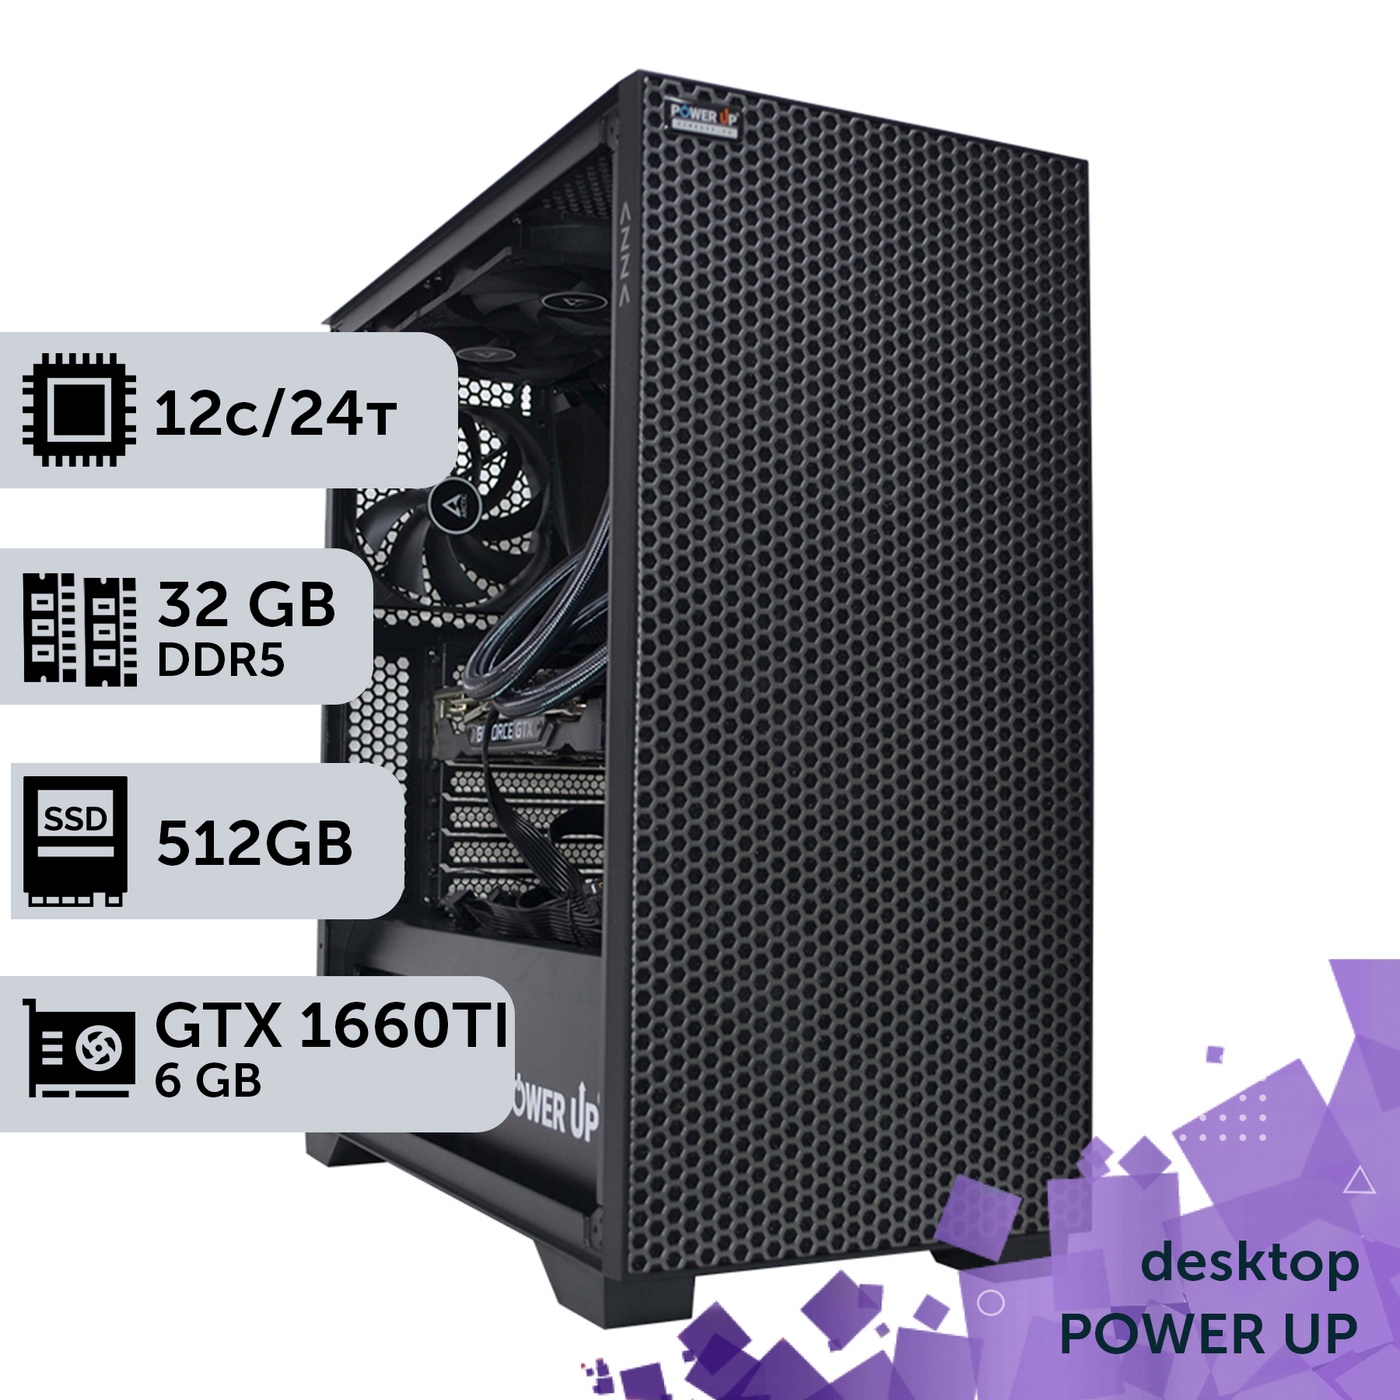 Робоча станція PowerUp Desktop #166 Ryzen 9 7900x/32 GB/SSD 512GB/GeForce GTX 1660Ti 6GB